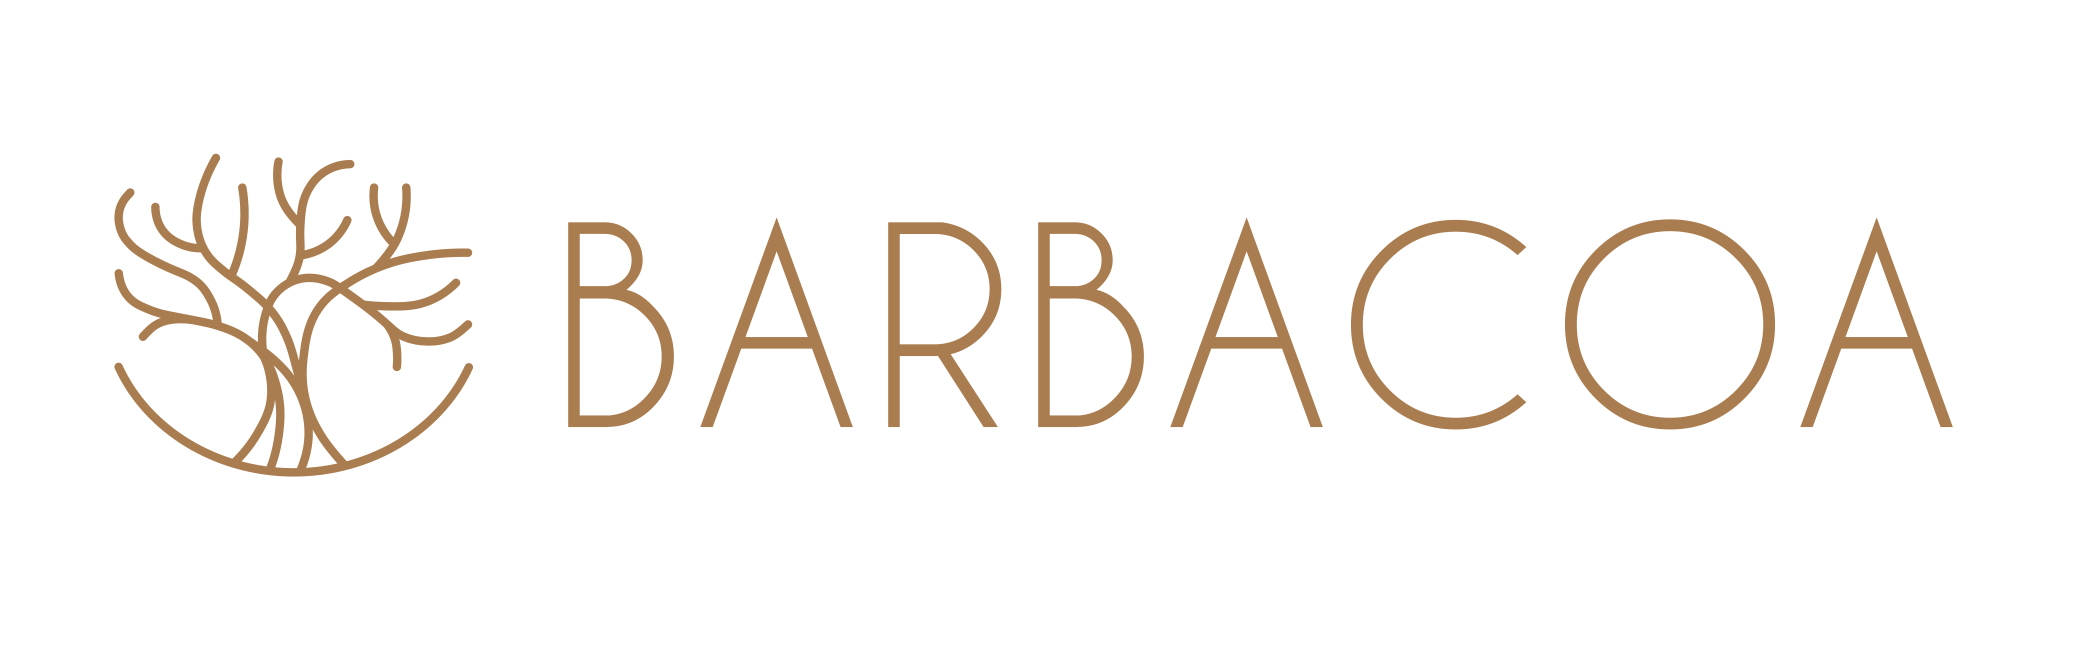 Barbacoa Logo Landscape